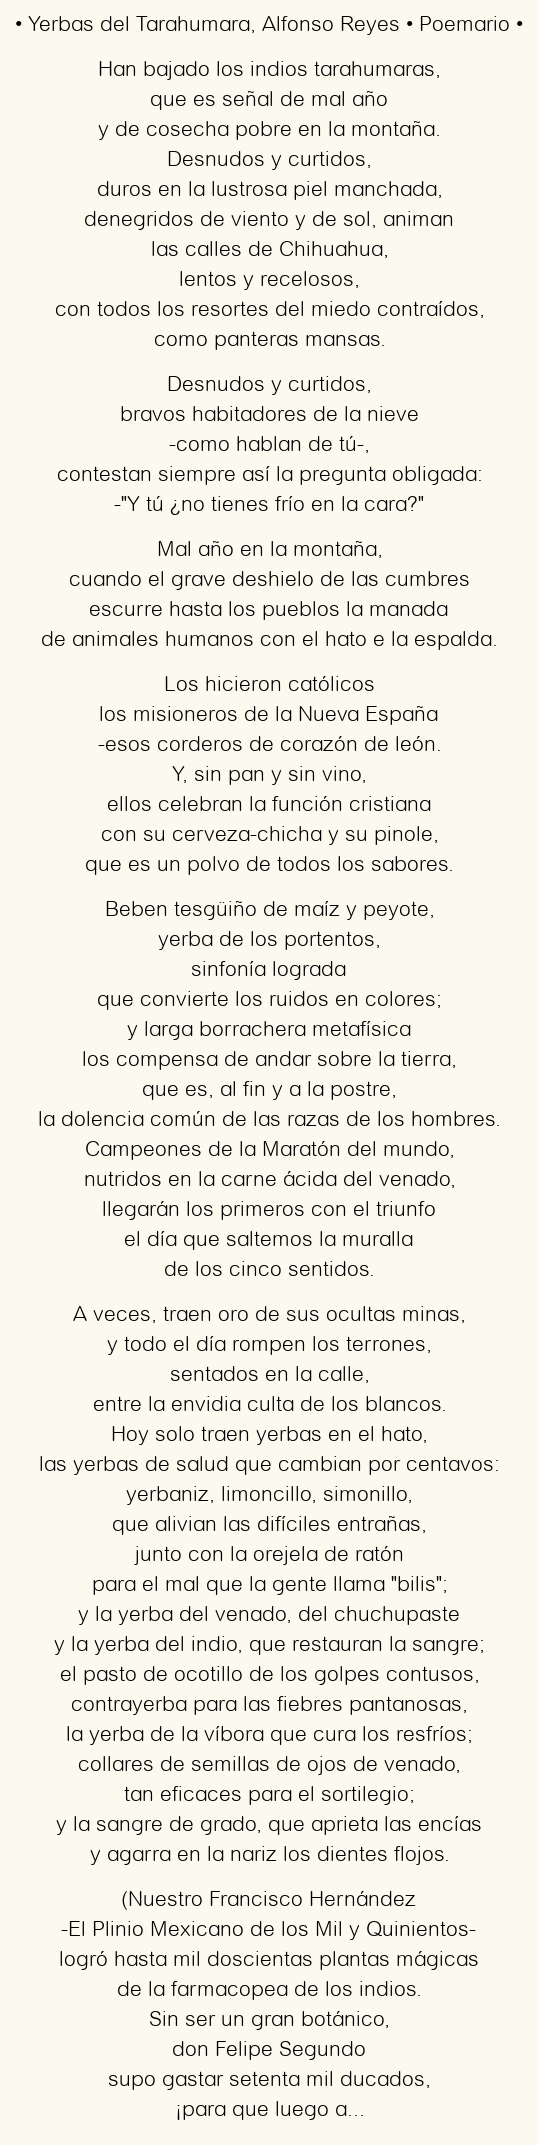 Imagen con el poema Yerbas del Tarahumara, por Alfonso Reyes